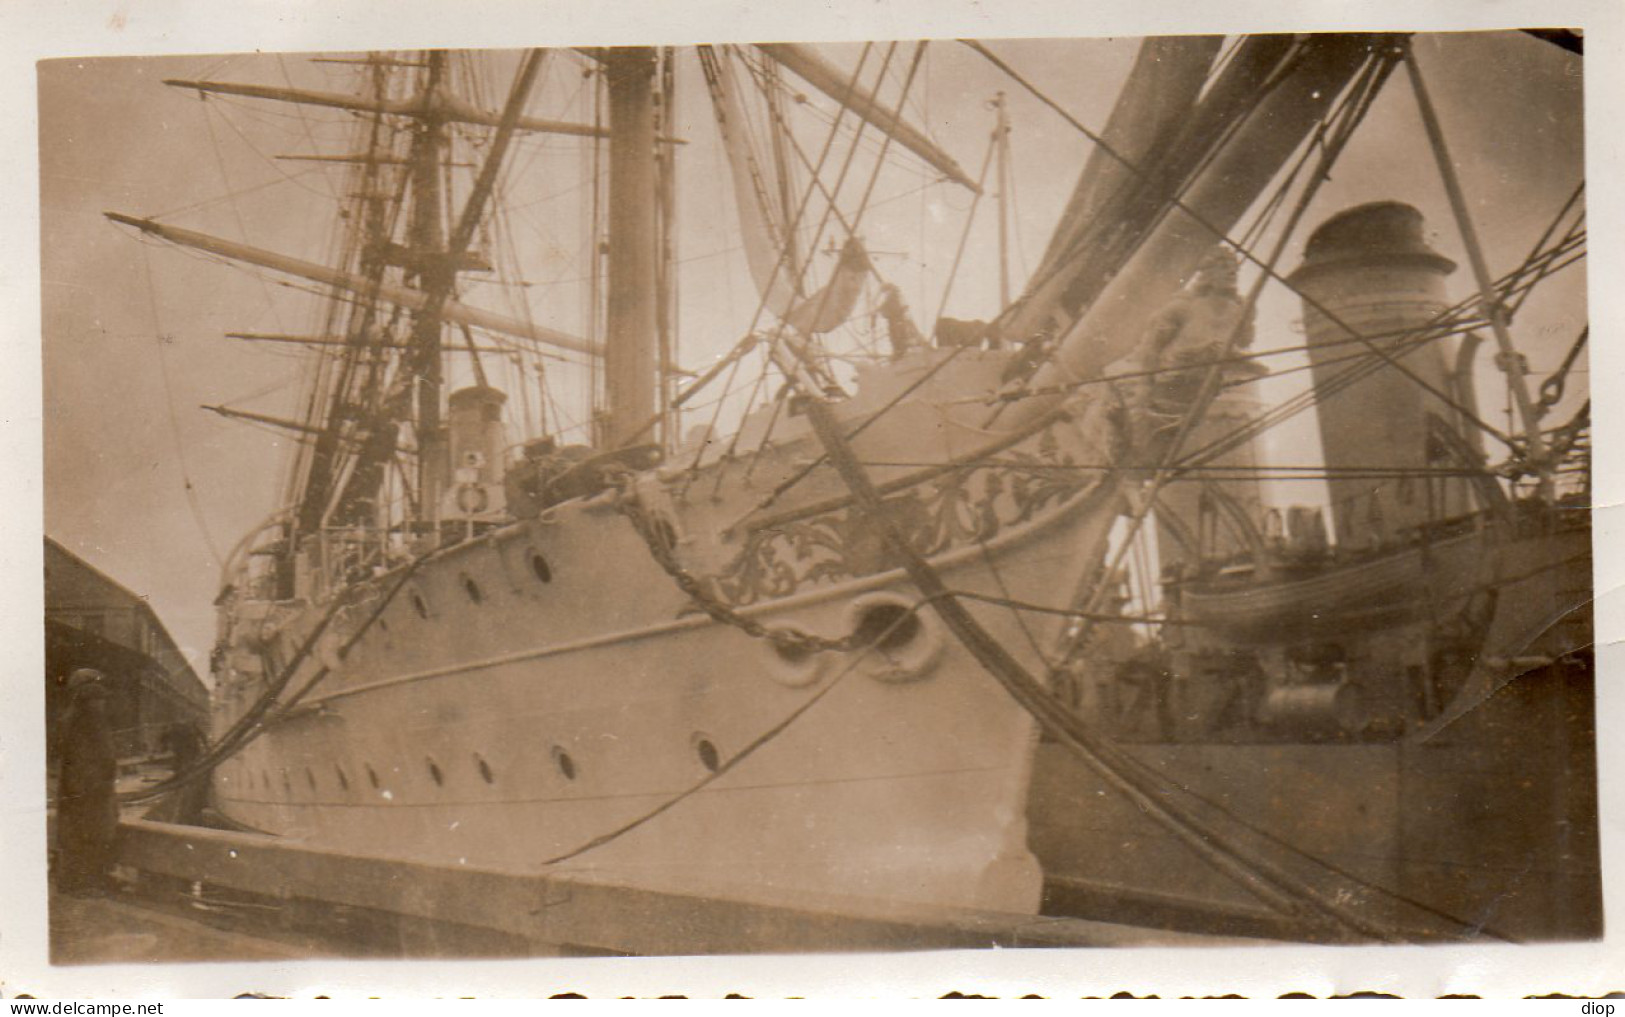 Photographie Photo Vintage Snapshot Militaire Quai Dock Bateau Marin  - Boten